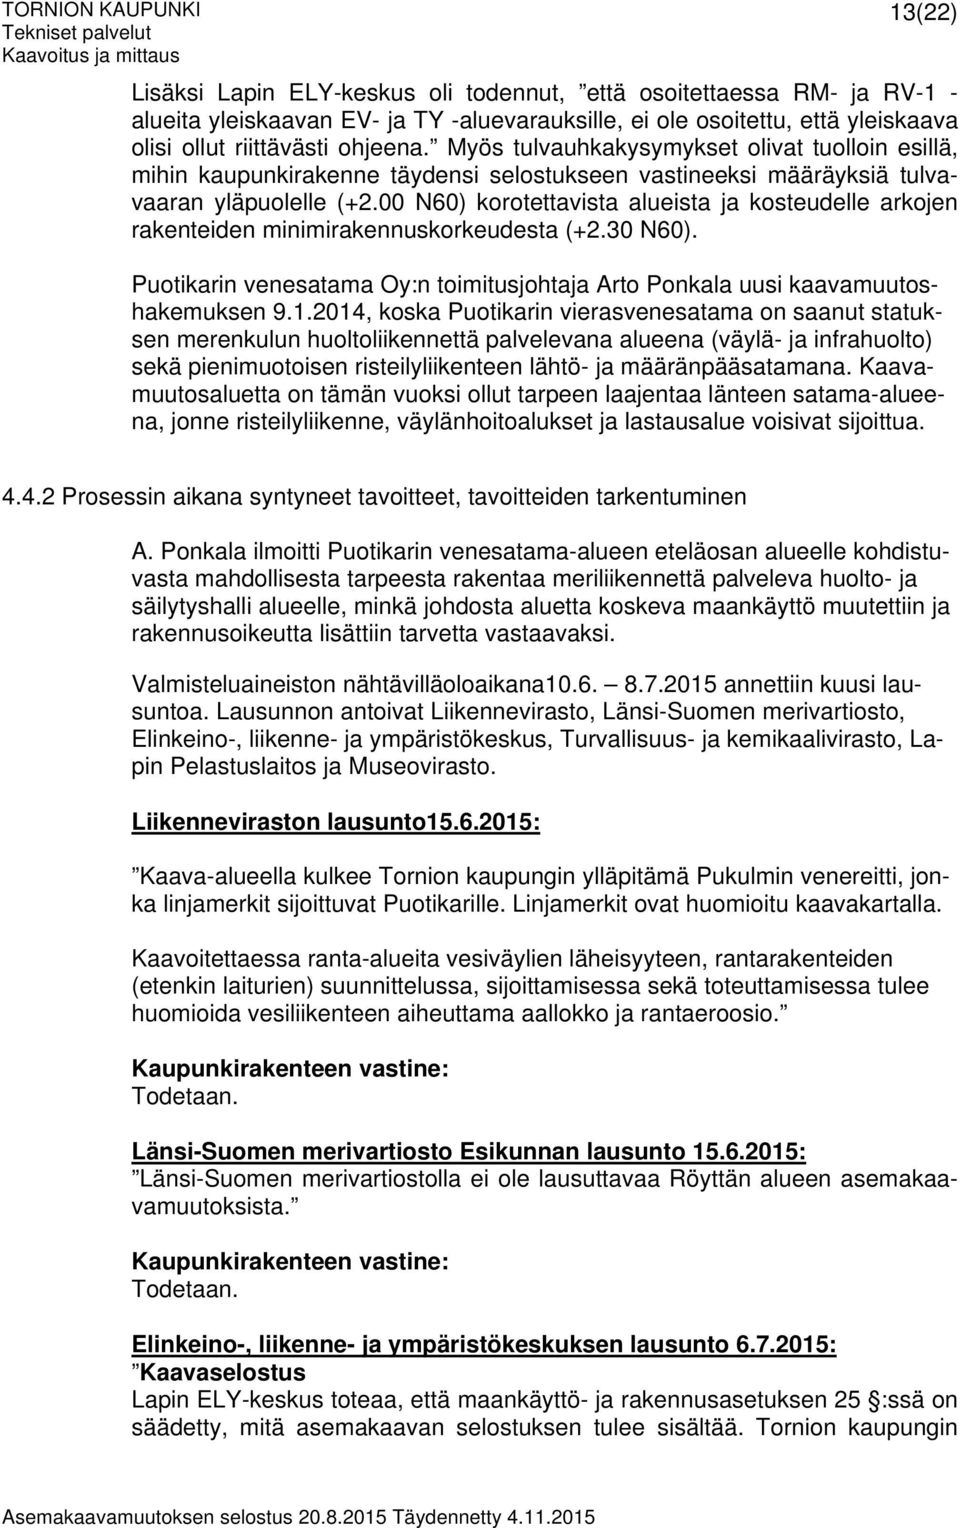 00 N60) korotettavista alueista ja kosteudelle arkojen rakenteiden minimirakennuskorkeudesta (+2.30 N60). Puotikarin venesatama Oy:n toimitusjohtaja Arto Ponkala uusi kaavamuutoshakemuksen 9.1.